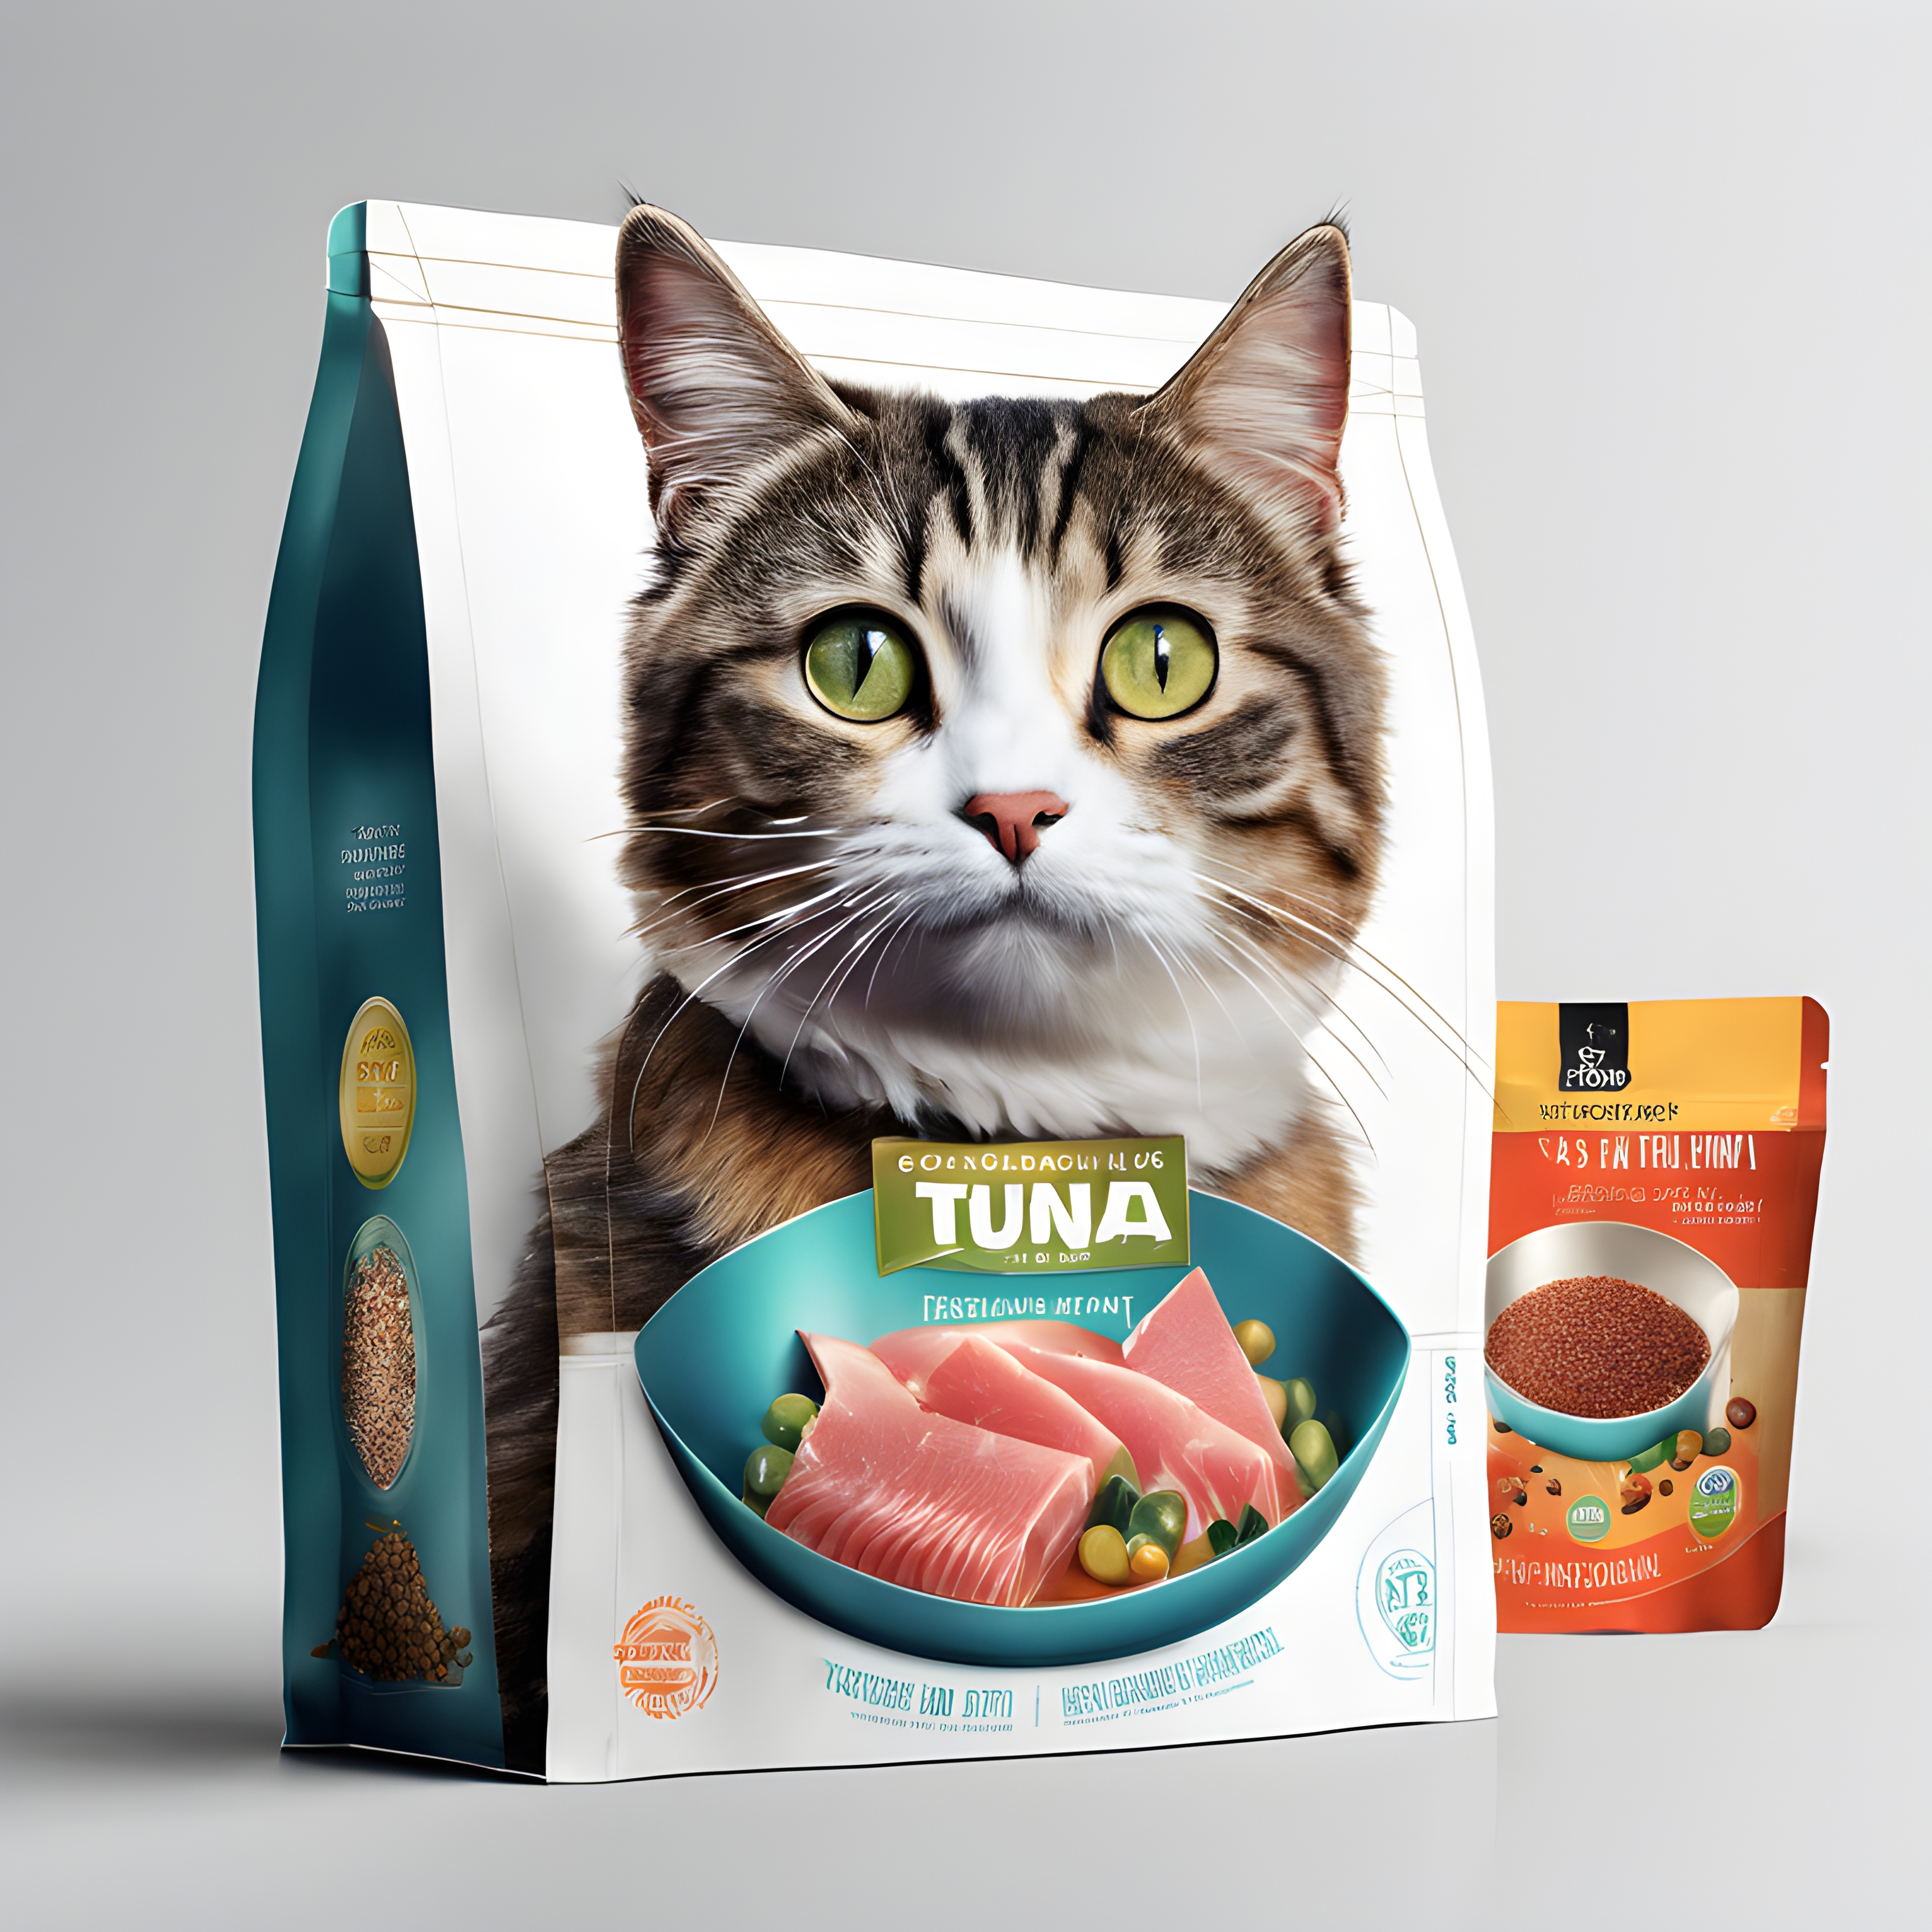 สร้างภาพ การออกแบบบรรจุภัณฑ์อาหารแมว มีแมวและปลาทูน่าเป็นภาพประกอบ กระป๋อง สีสันสดใส